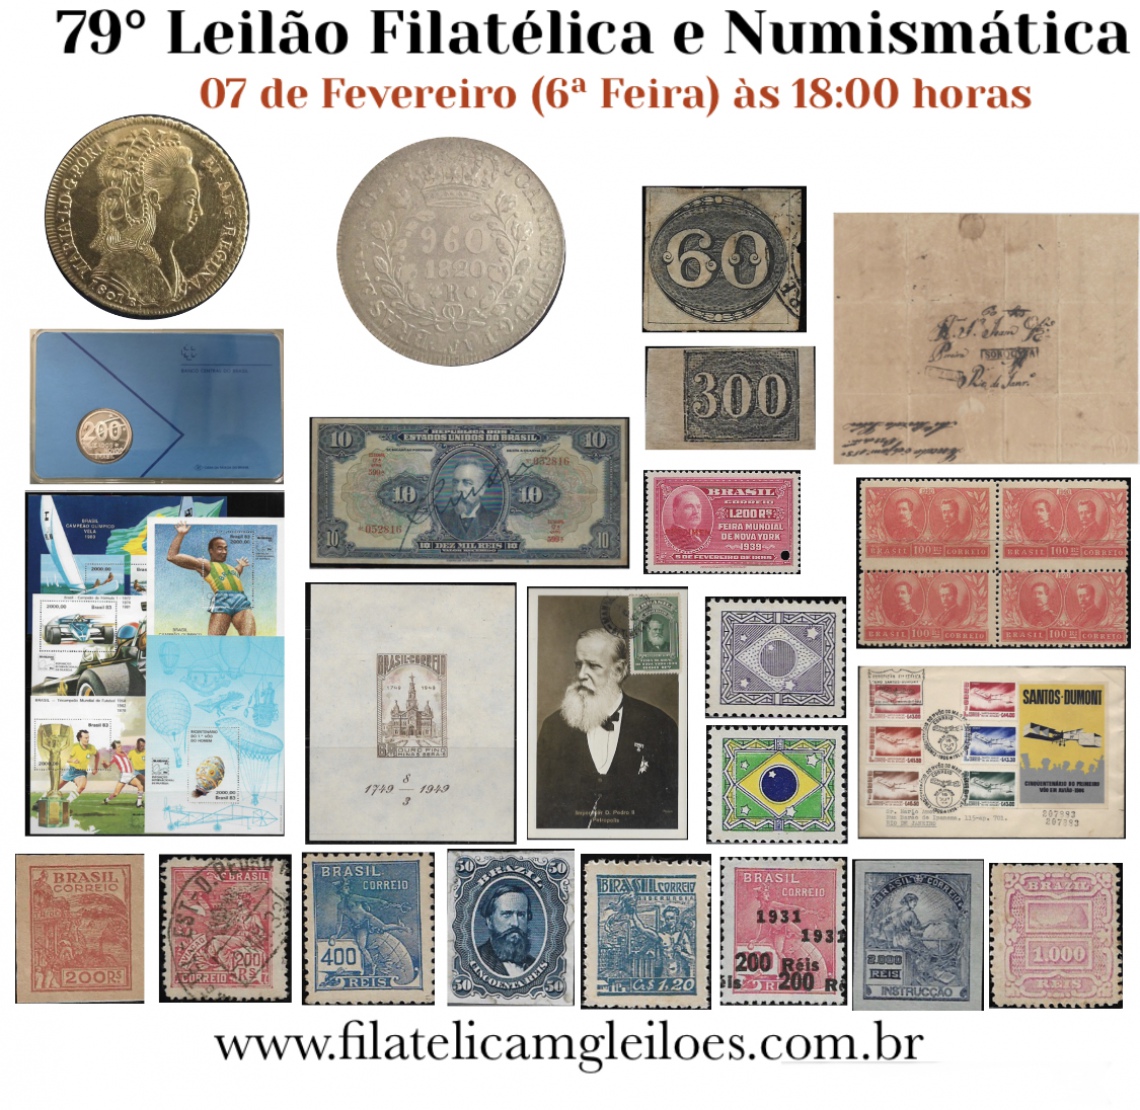 79º Leilão de Filatelia e Numismática